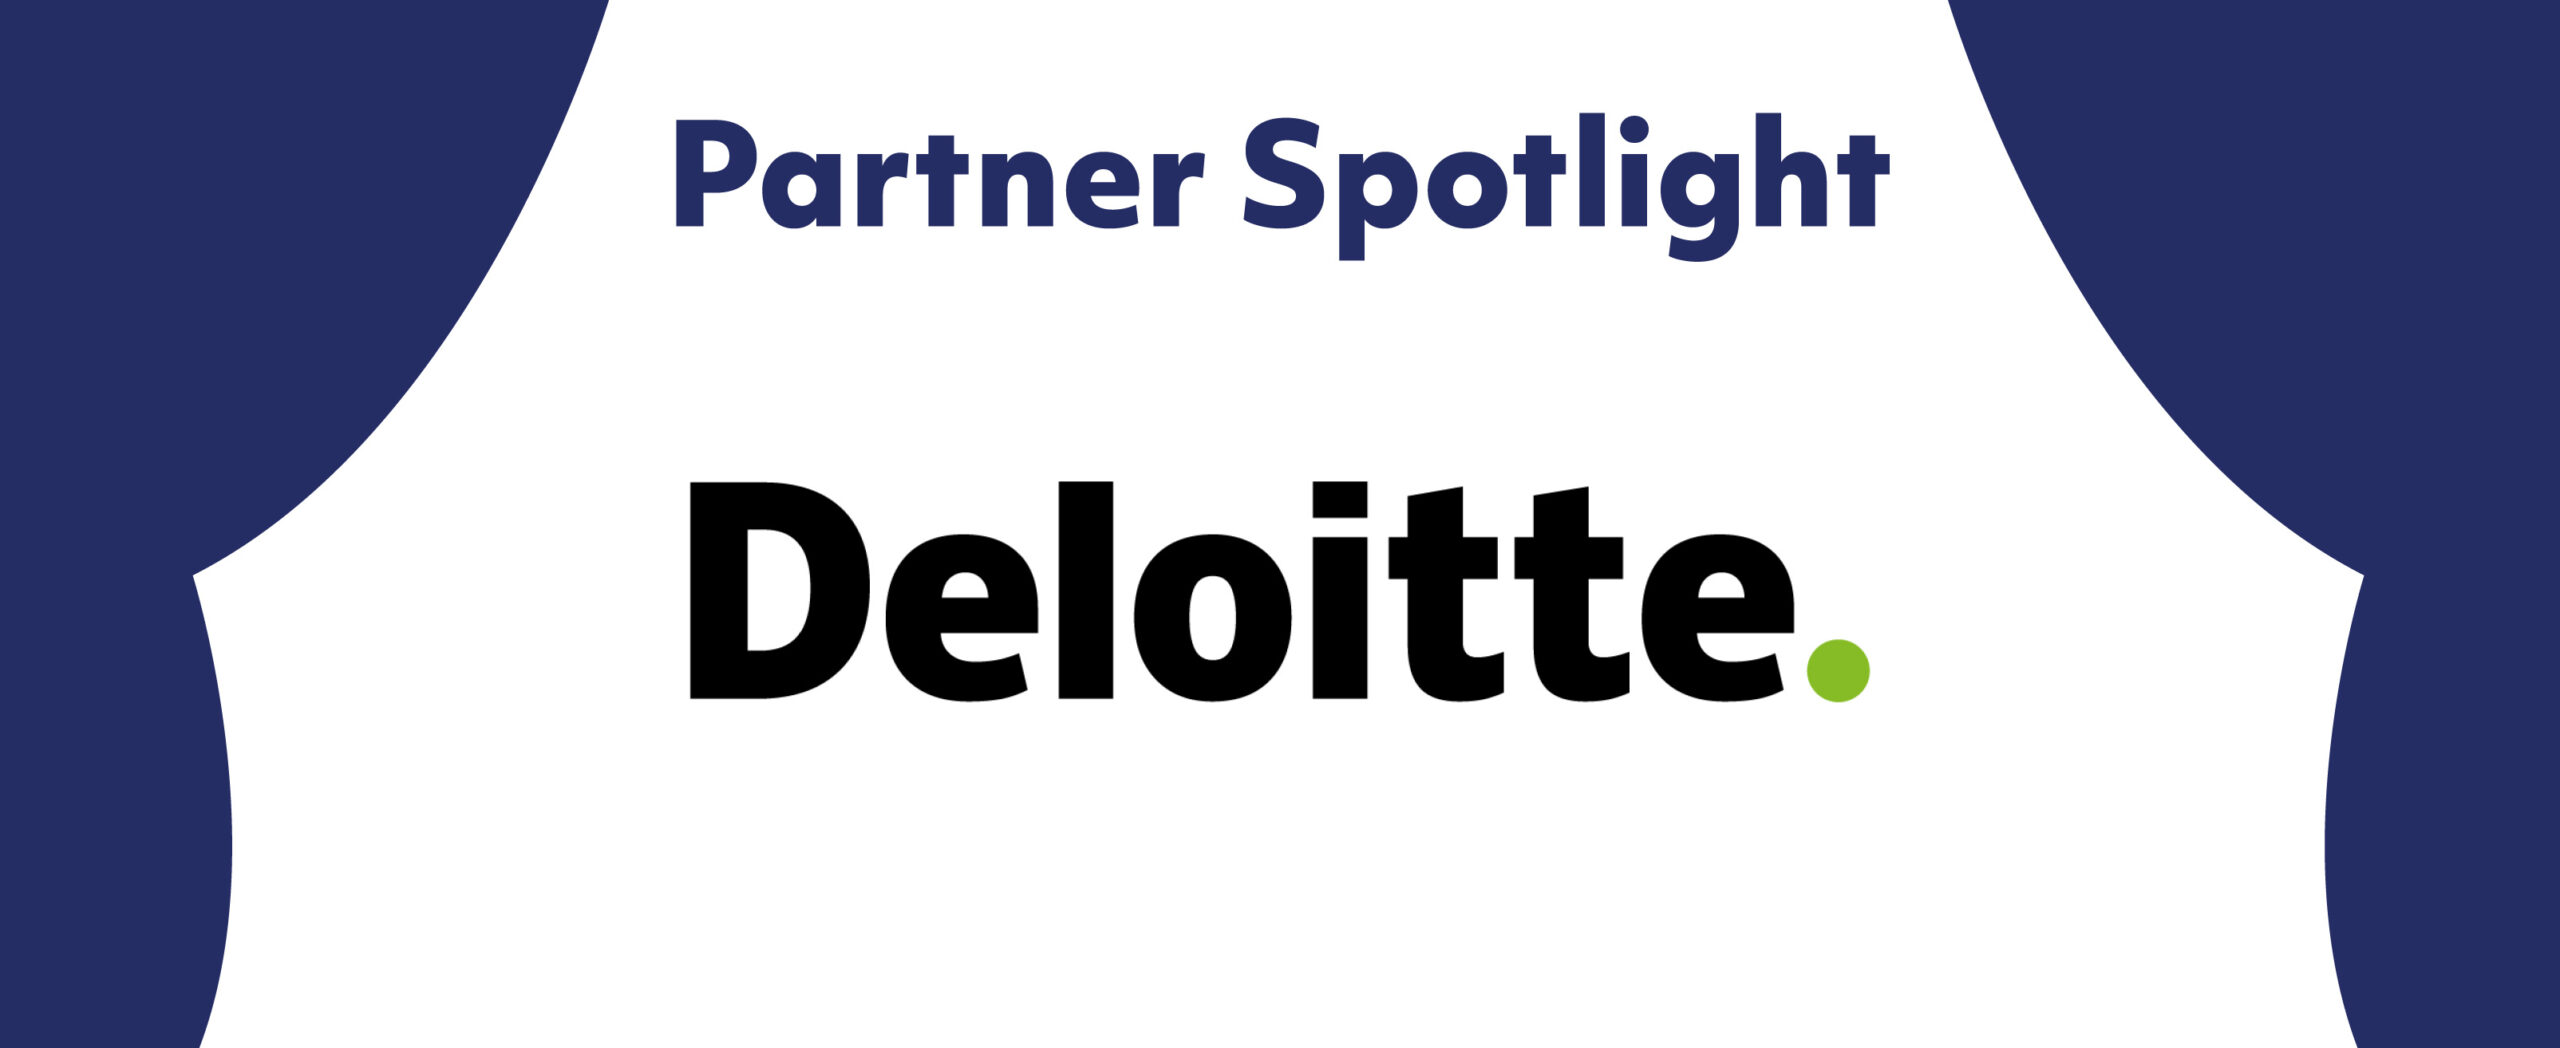 Partner Spotlight: Deloitte